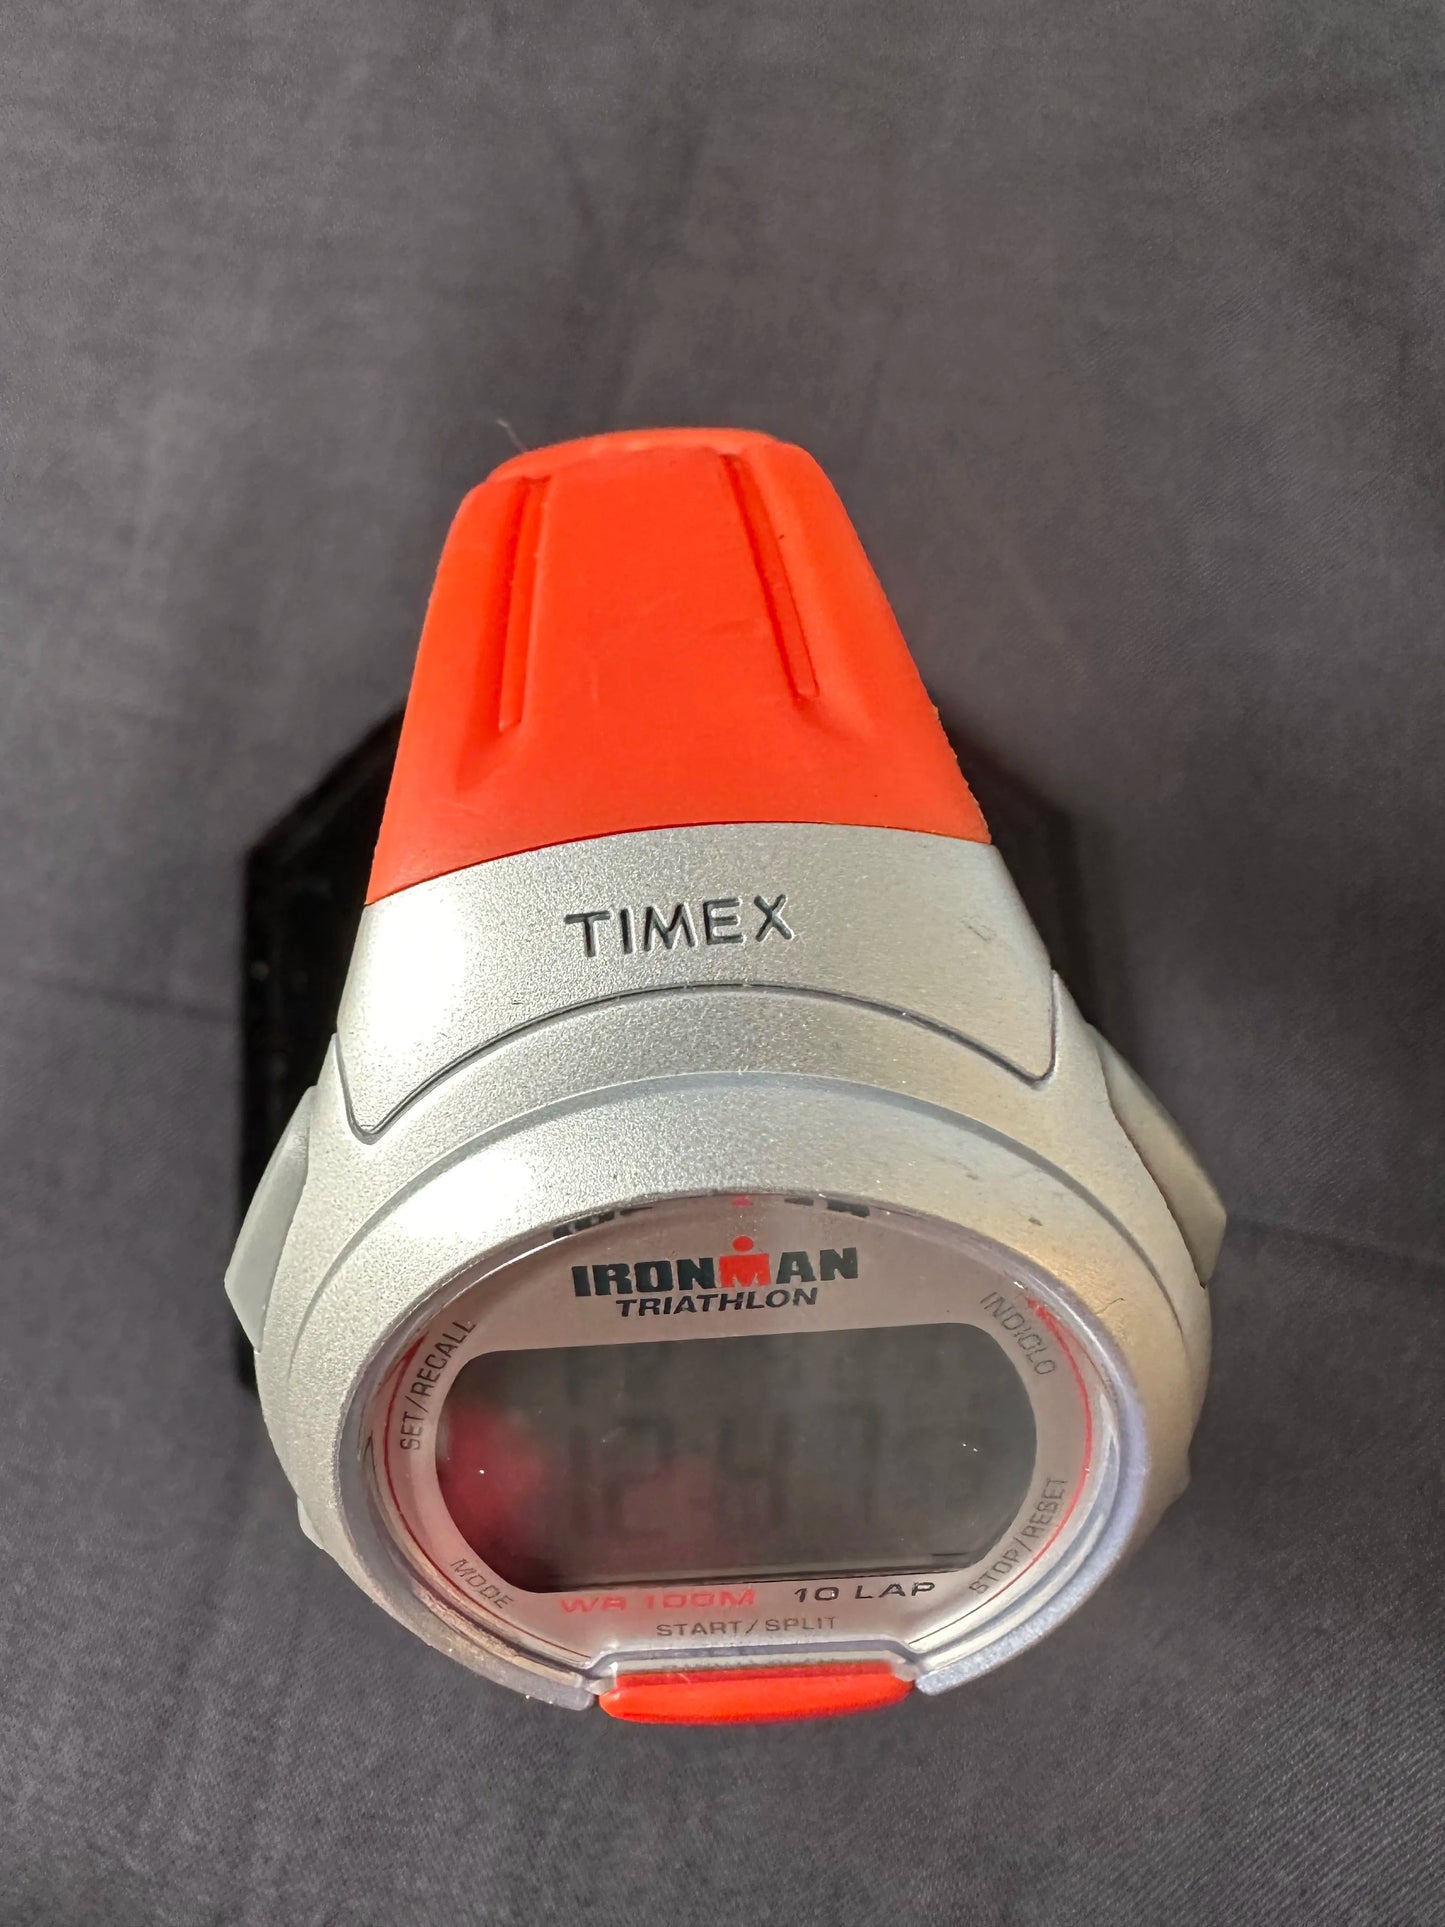 Timex IronMan Triathlon unisex orange band Digital Watch 10Lap 100M W/R New batt